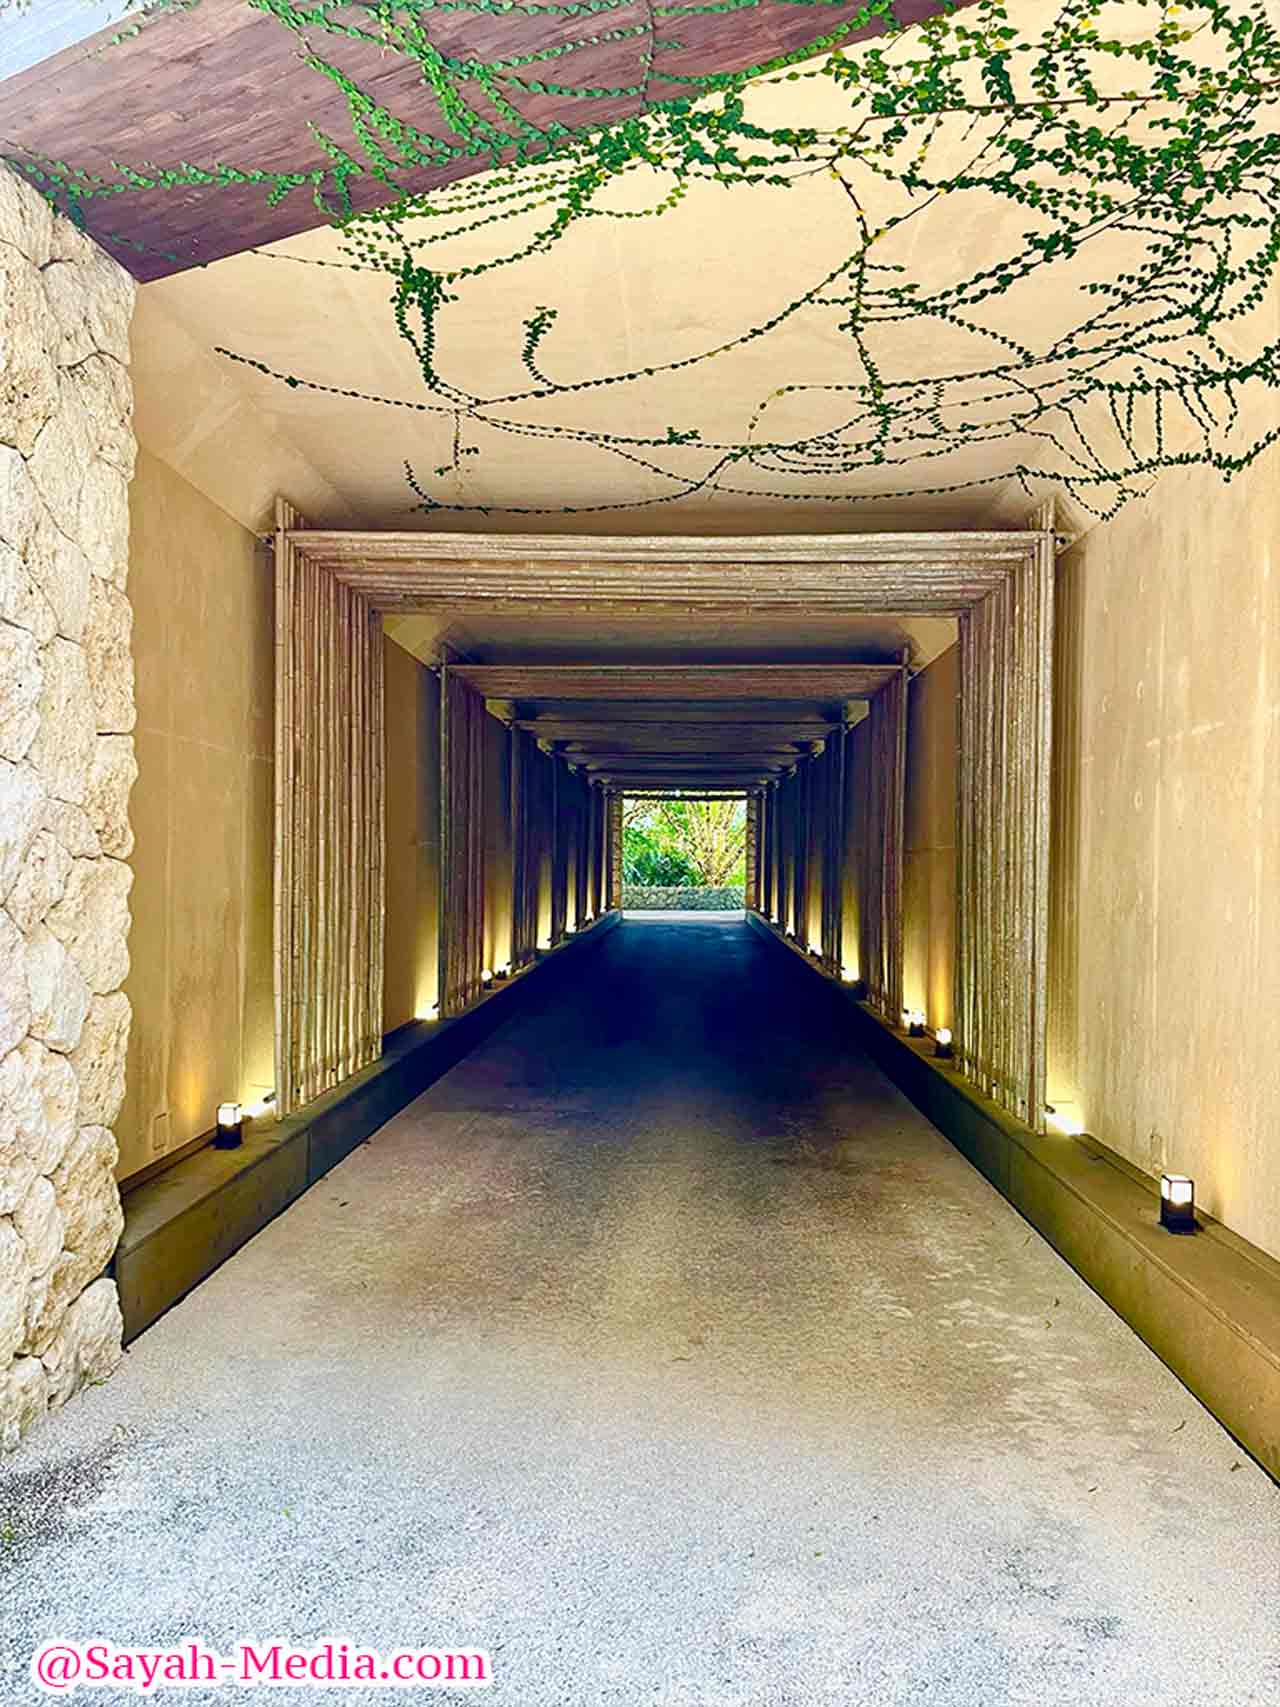 ザ・リッツ・カールトン沖縄のスパ棟に続くトンネル